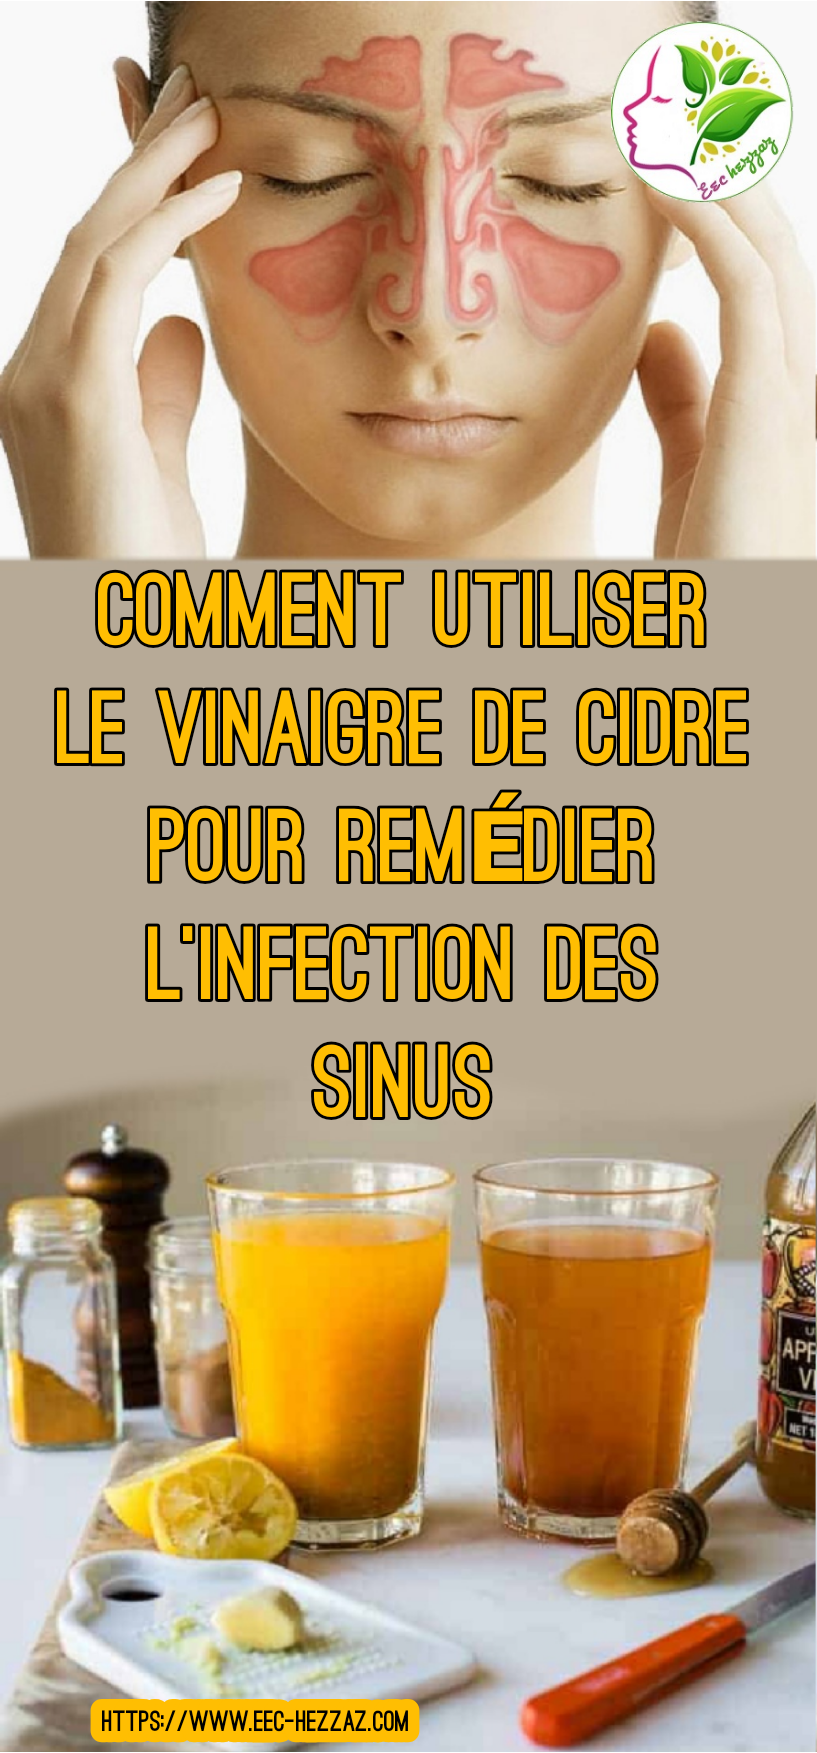 Comment utiliser le vinaigre de cidre pour remédier l'infection des sinus